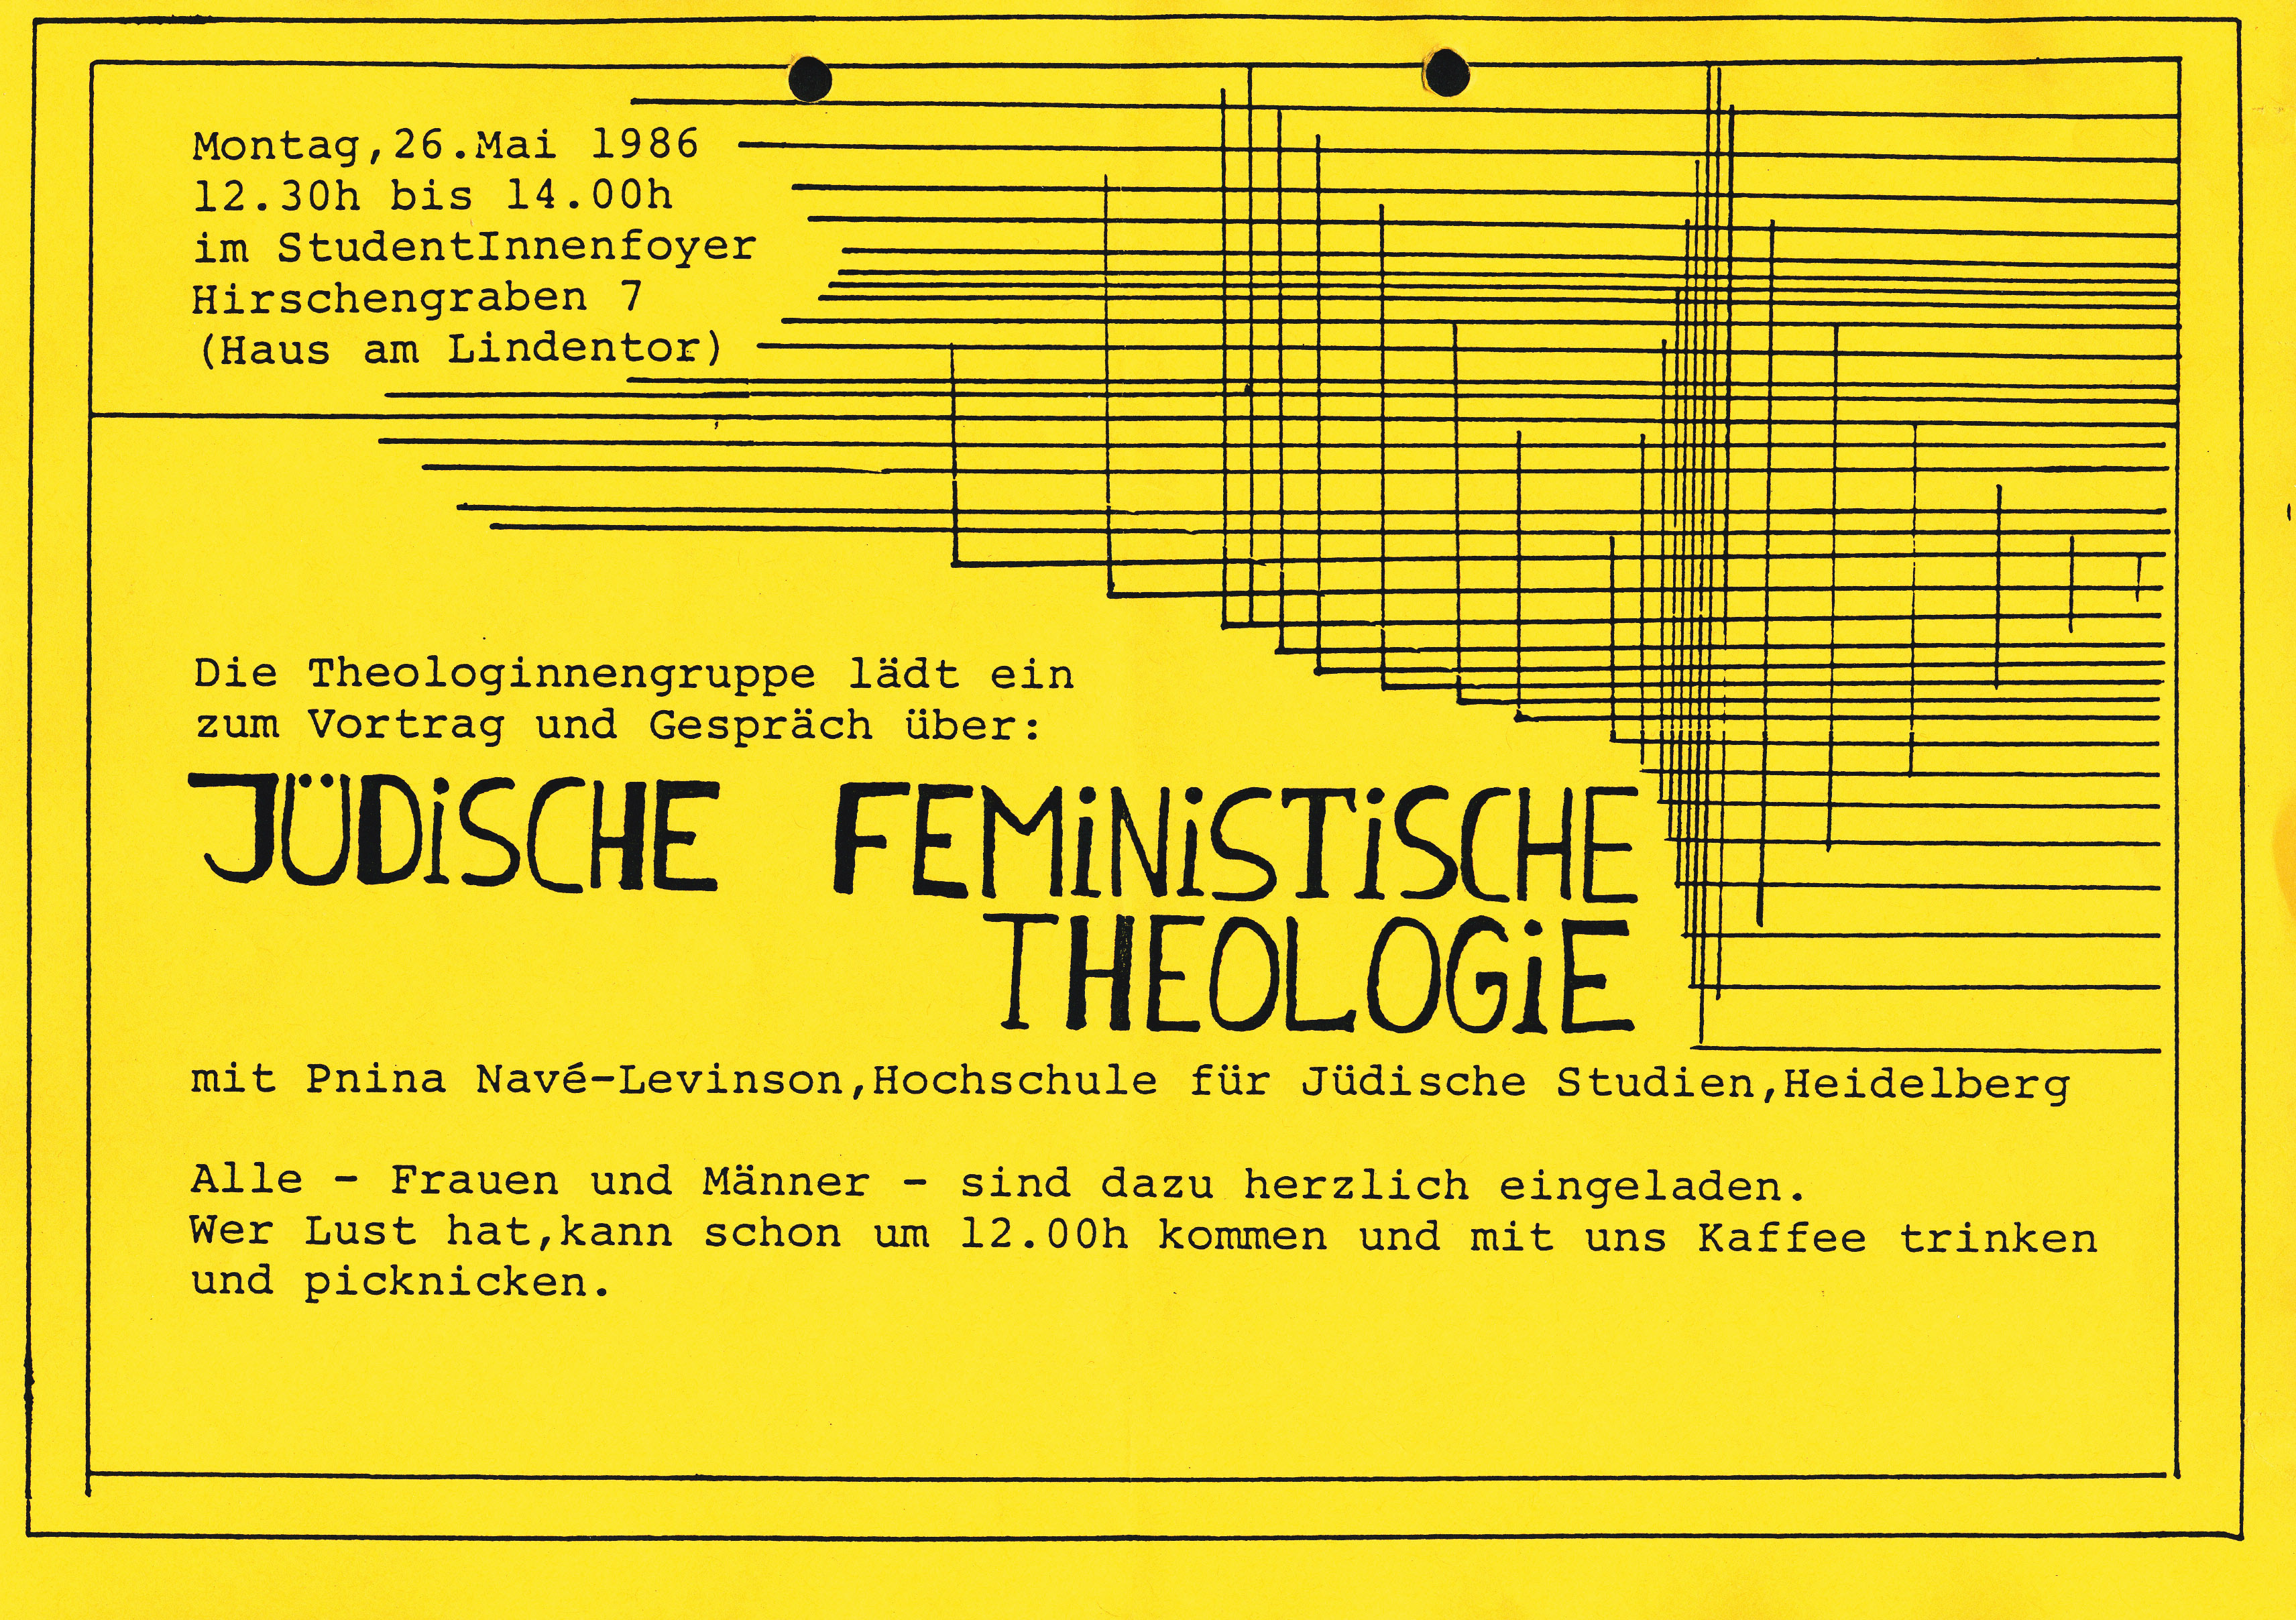 Jüdische feministische Theologie